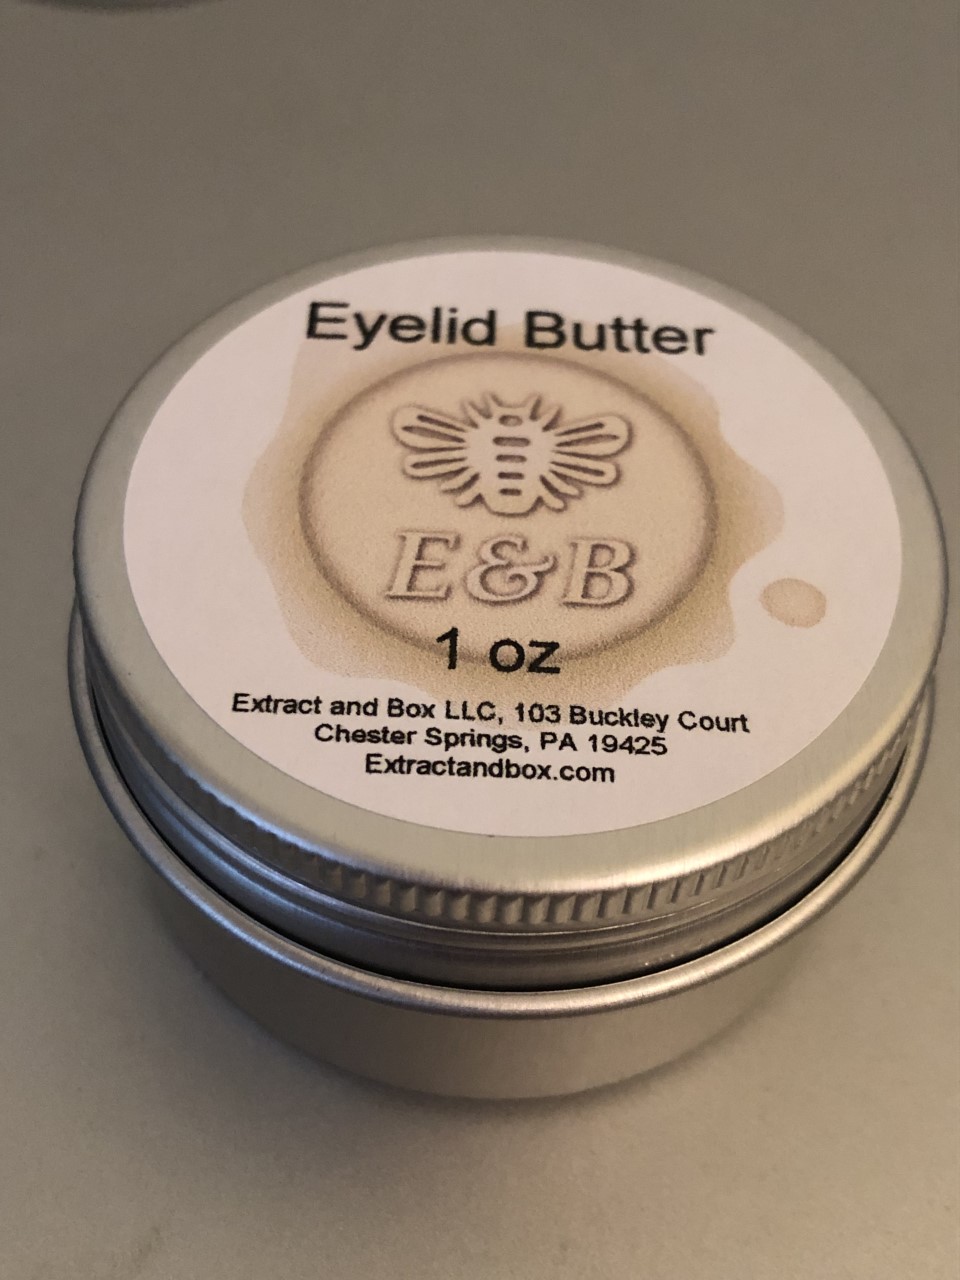 E&B Eyelid Butter single pack